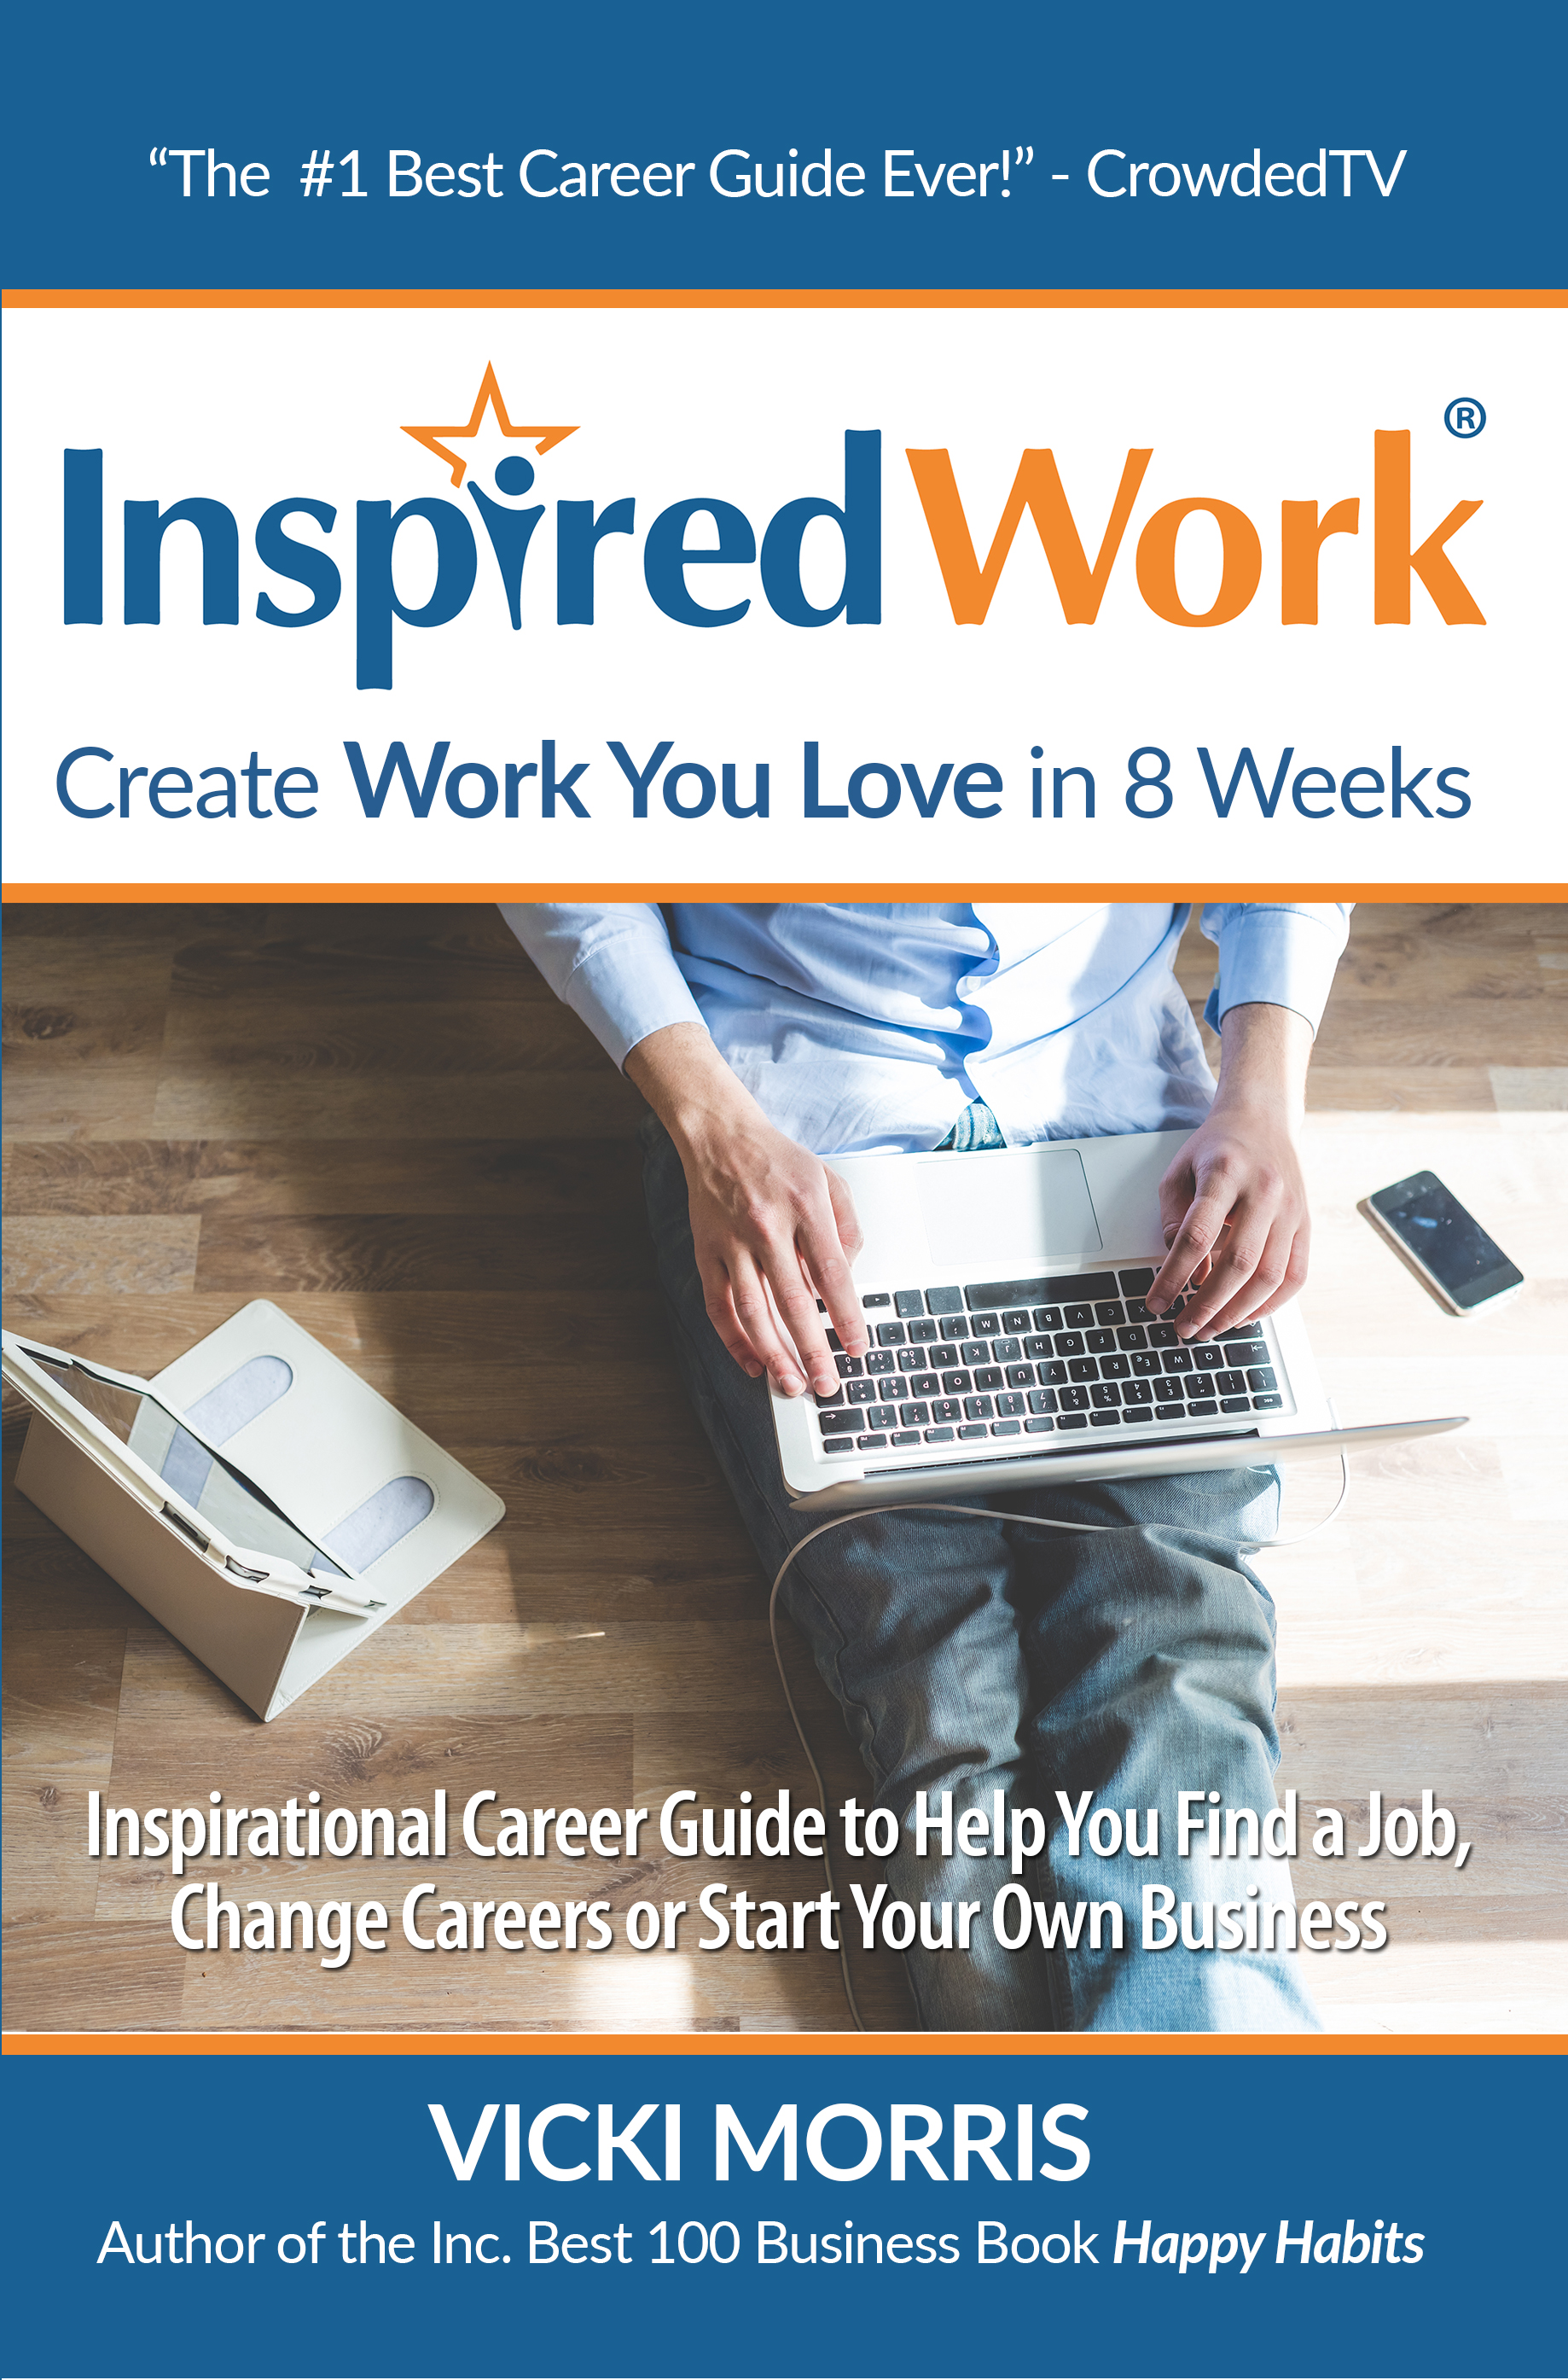 FREE: InspiredWork: Create Work You Love in 8 Weeks by Vicki Morris